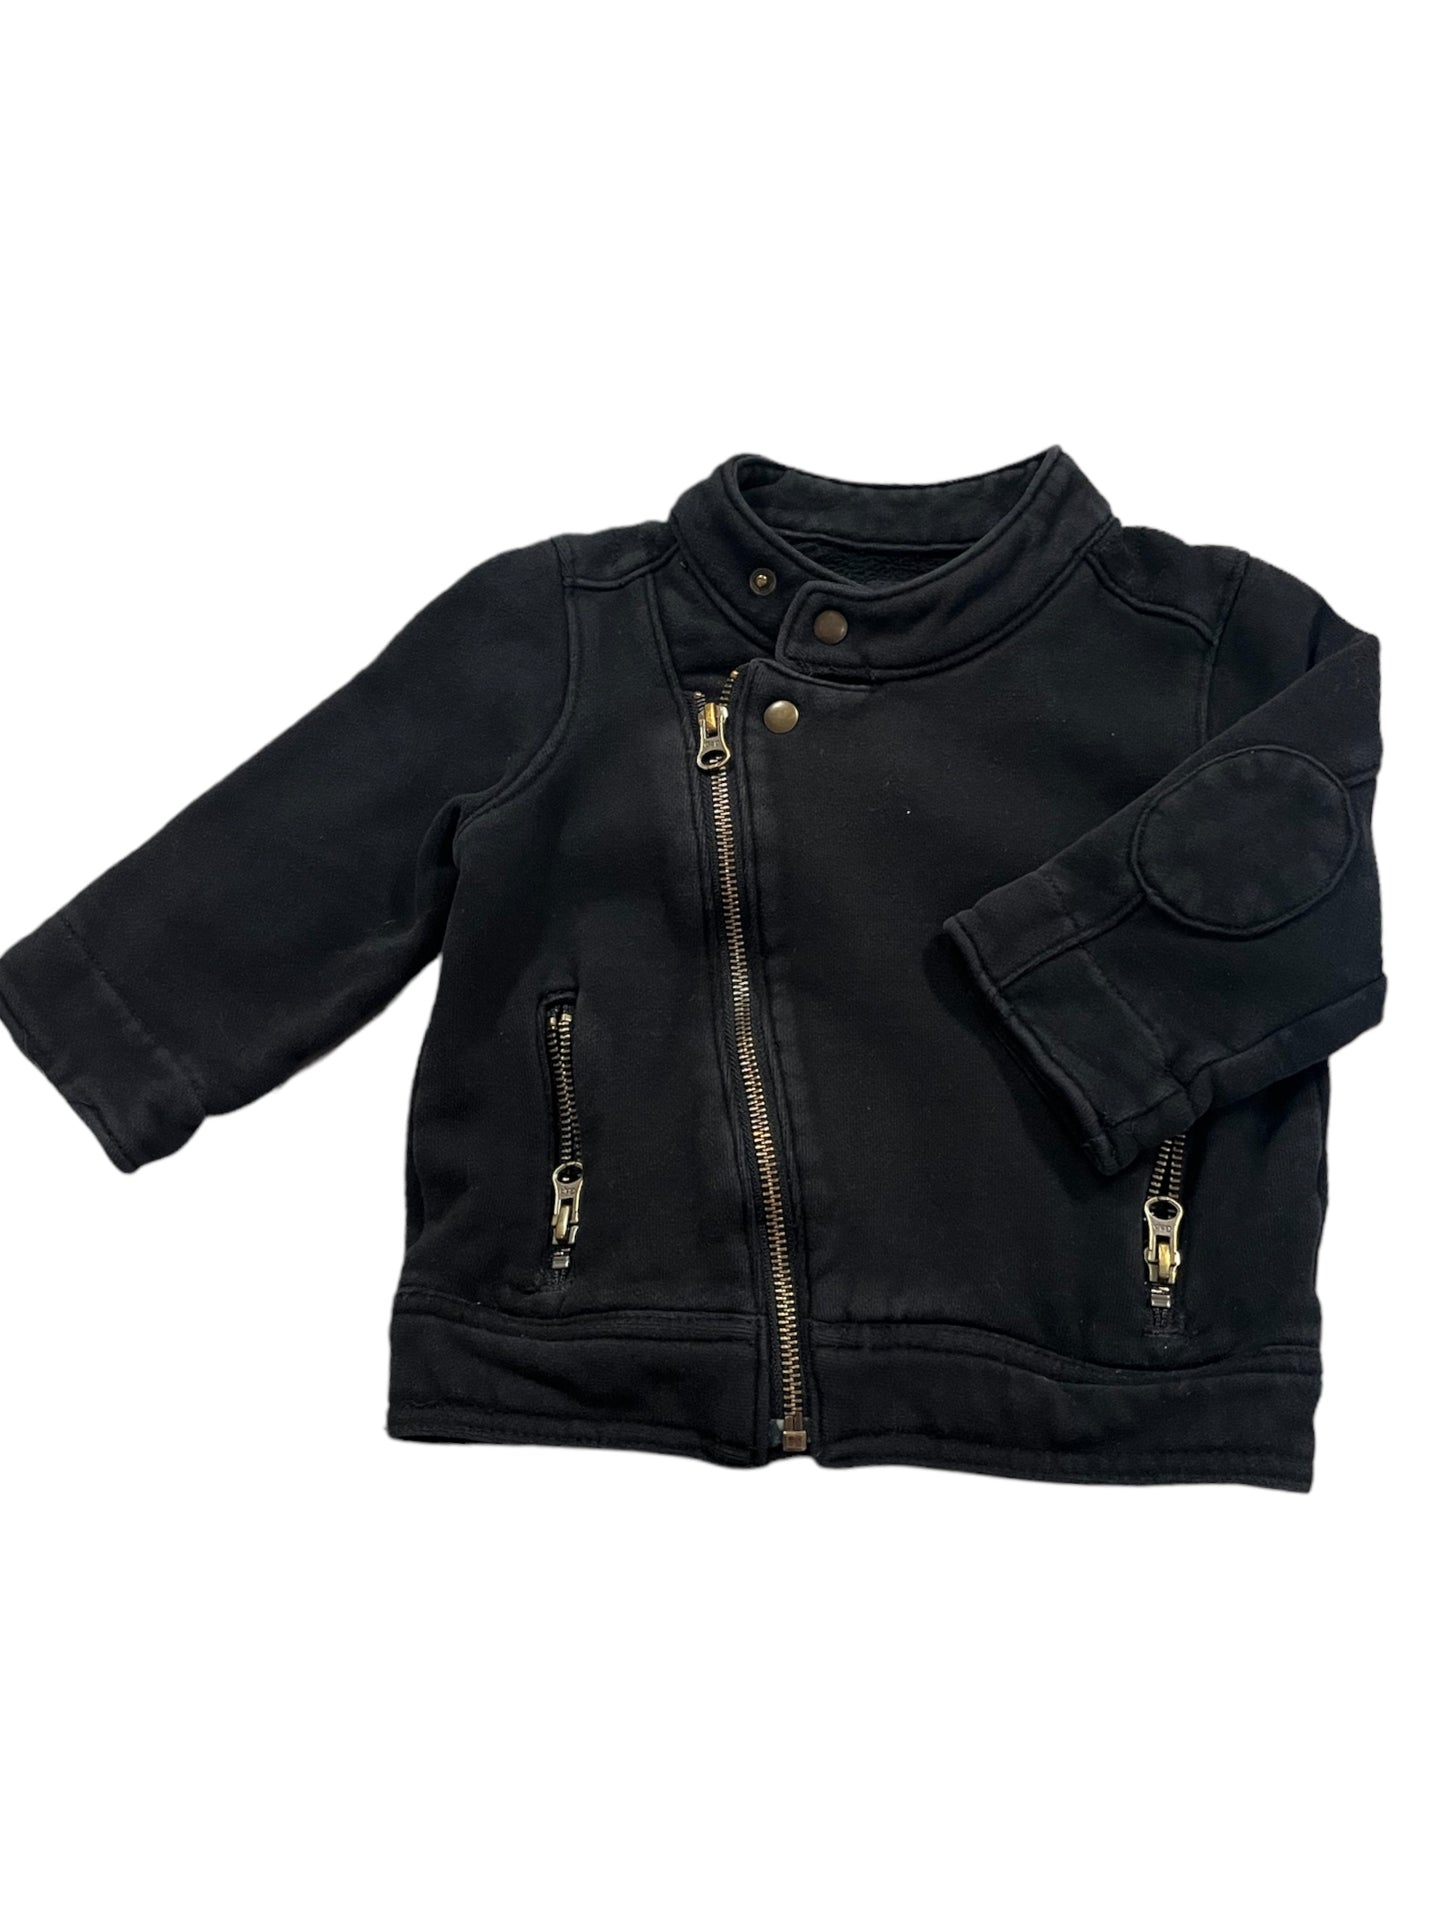 Black Zipper jacket size 18-24m